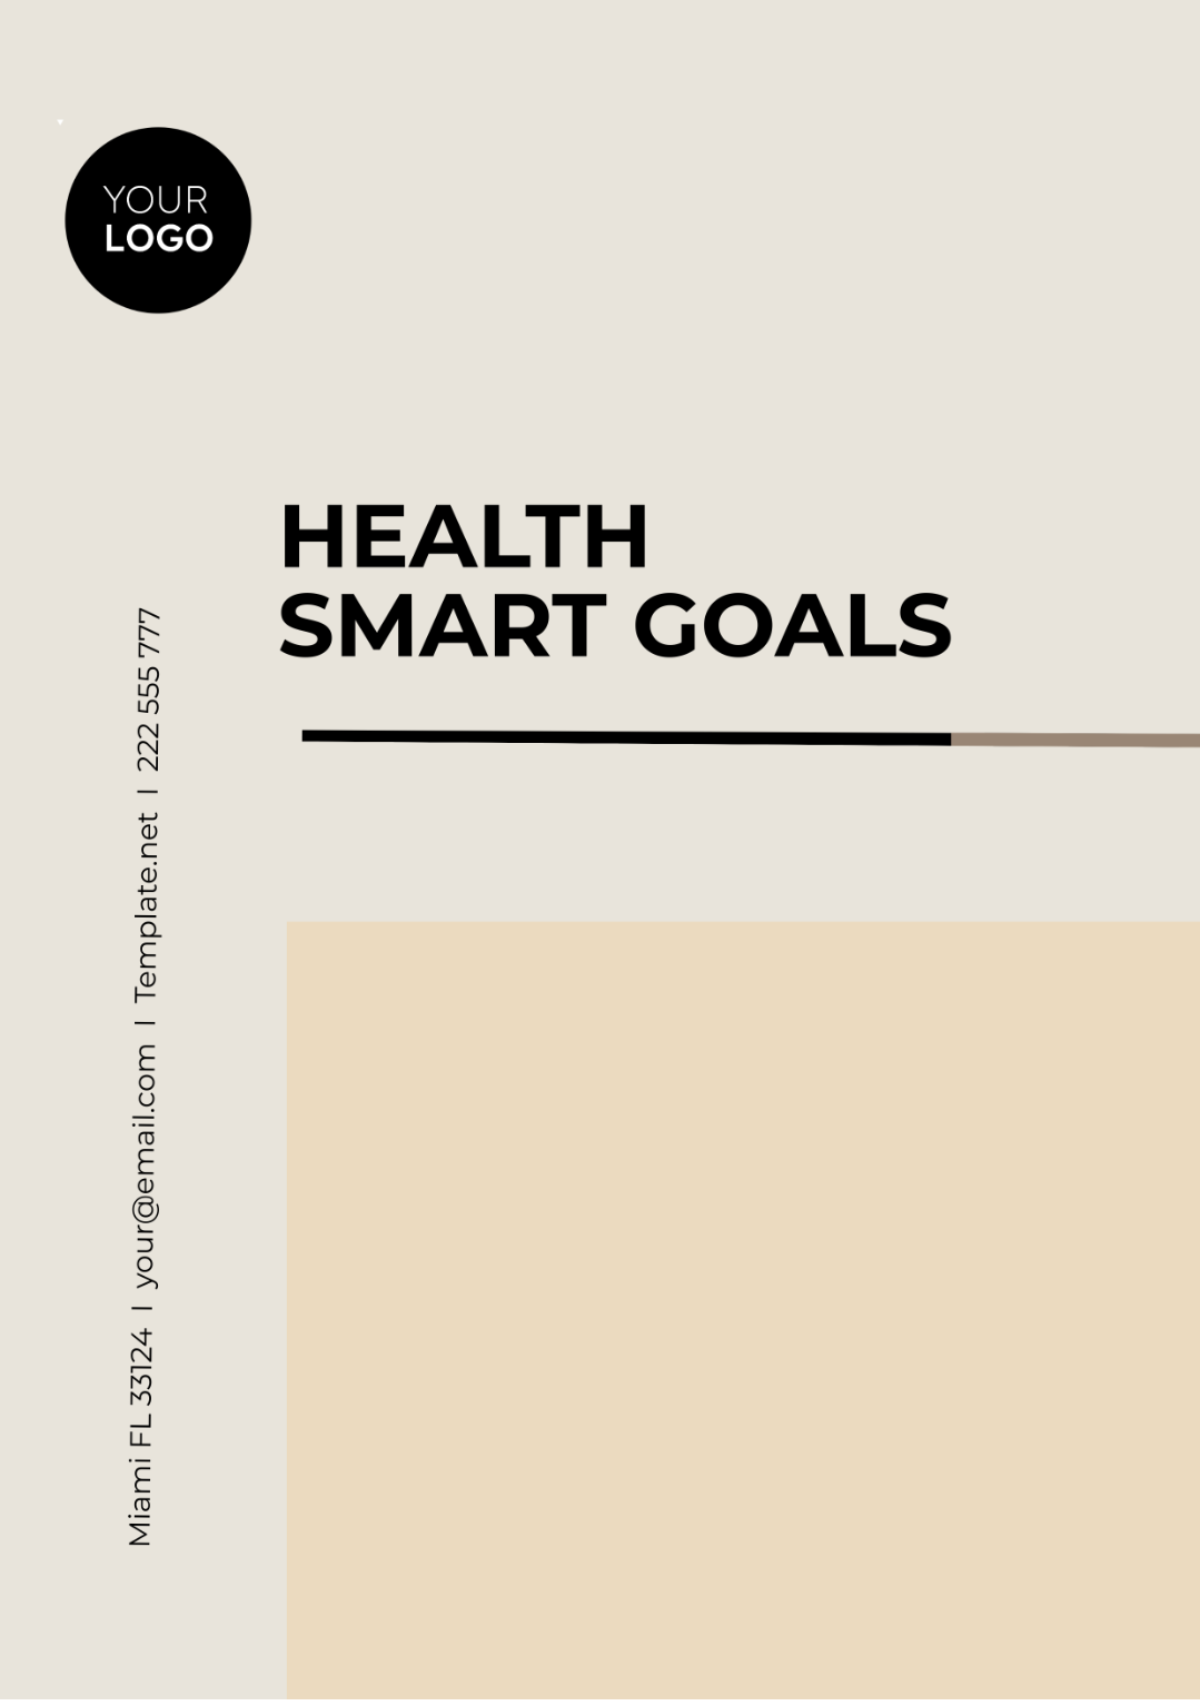 Health SMART Goals Template